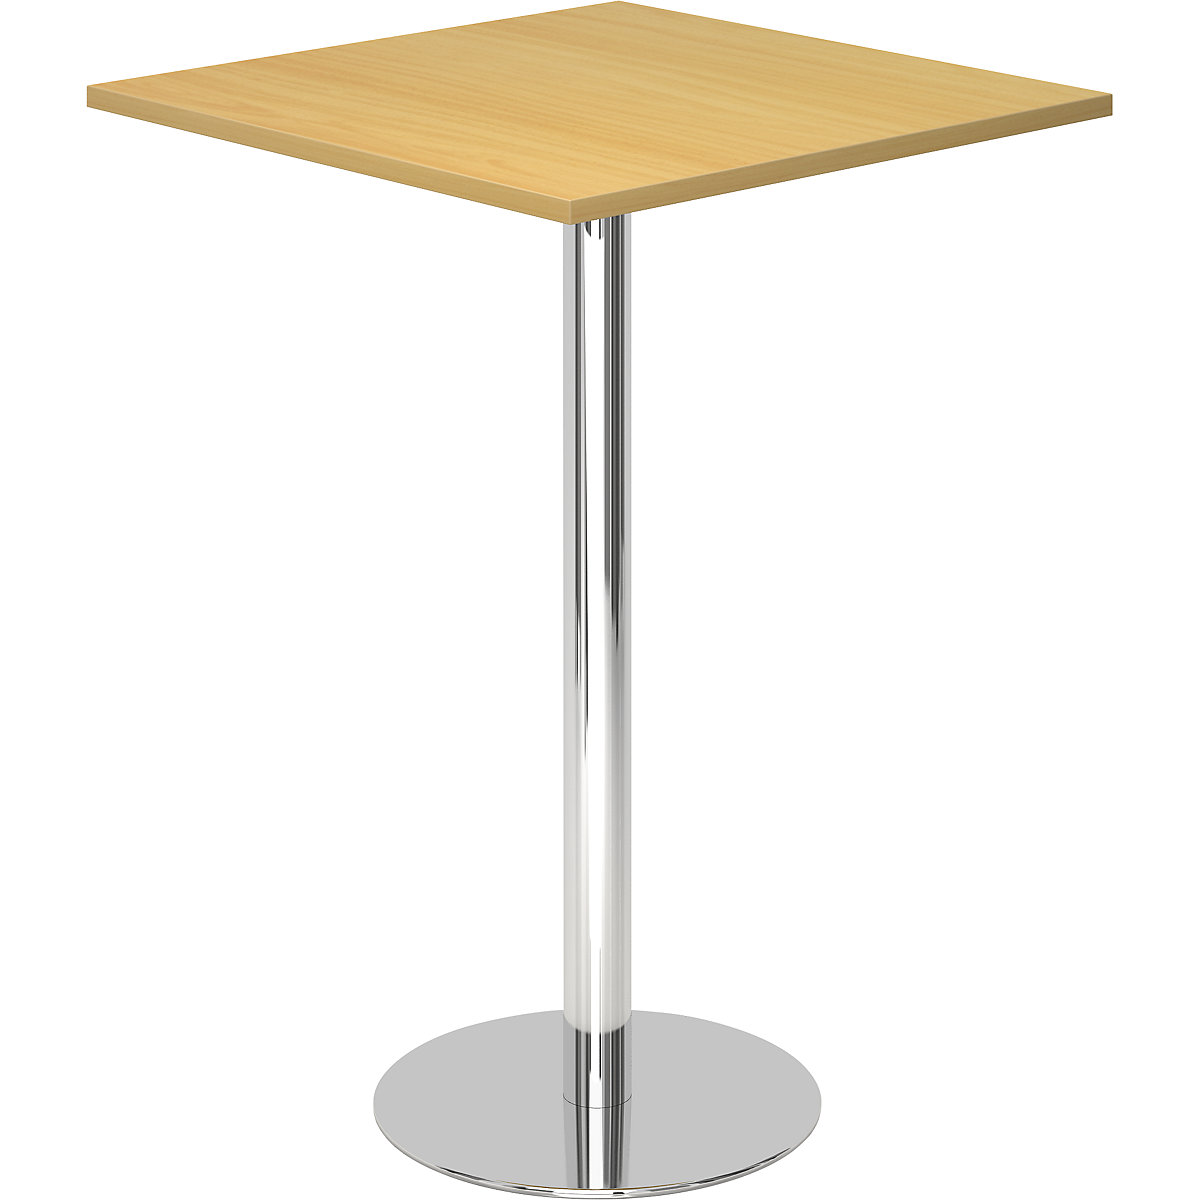 Állóasztal, h x szé 800 x 800 mm, 1116 mm magas, krómozott váz, bükk-dekor asztallap